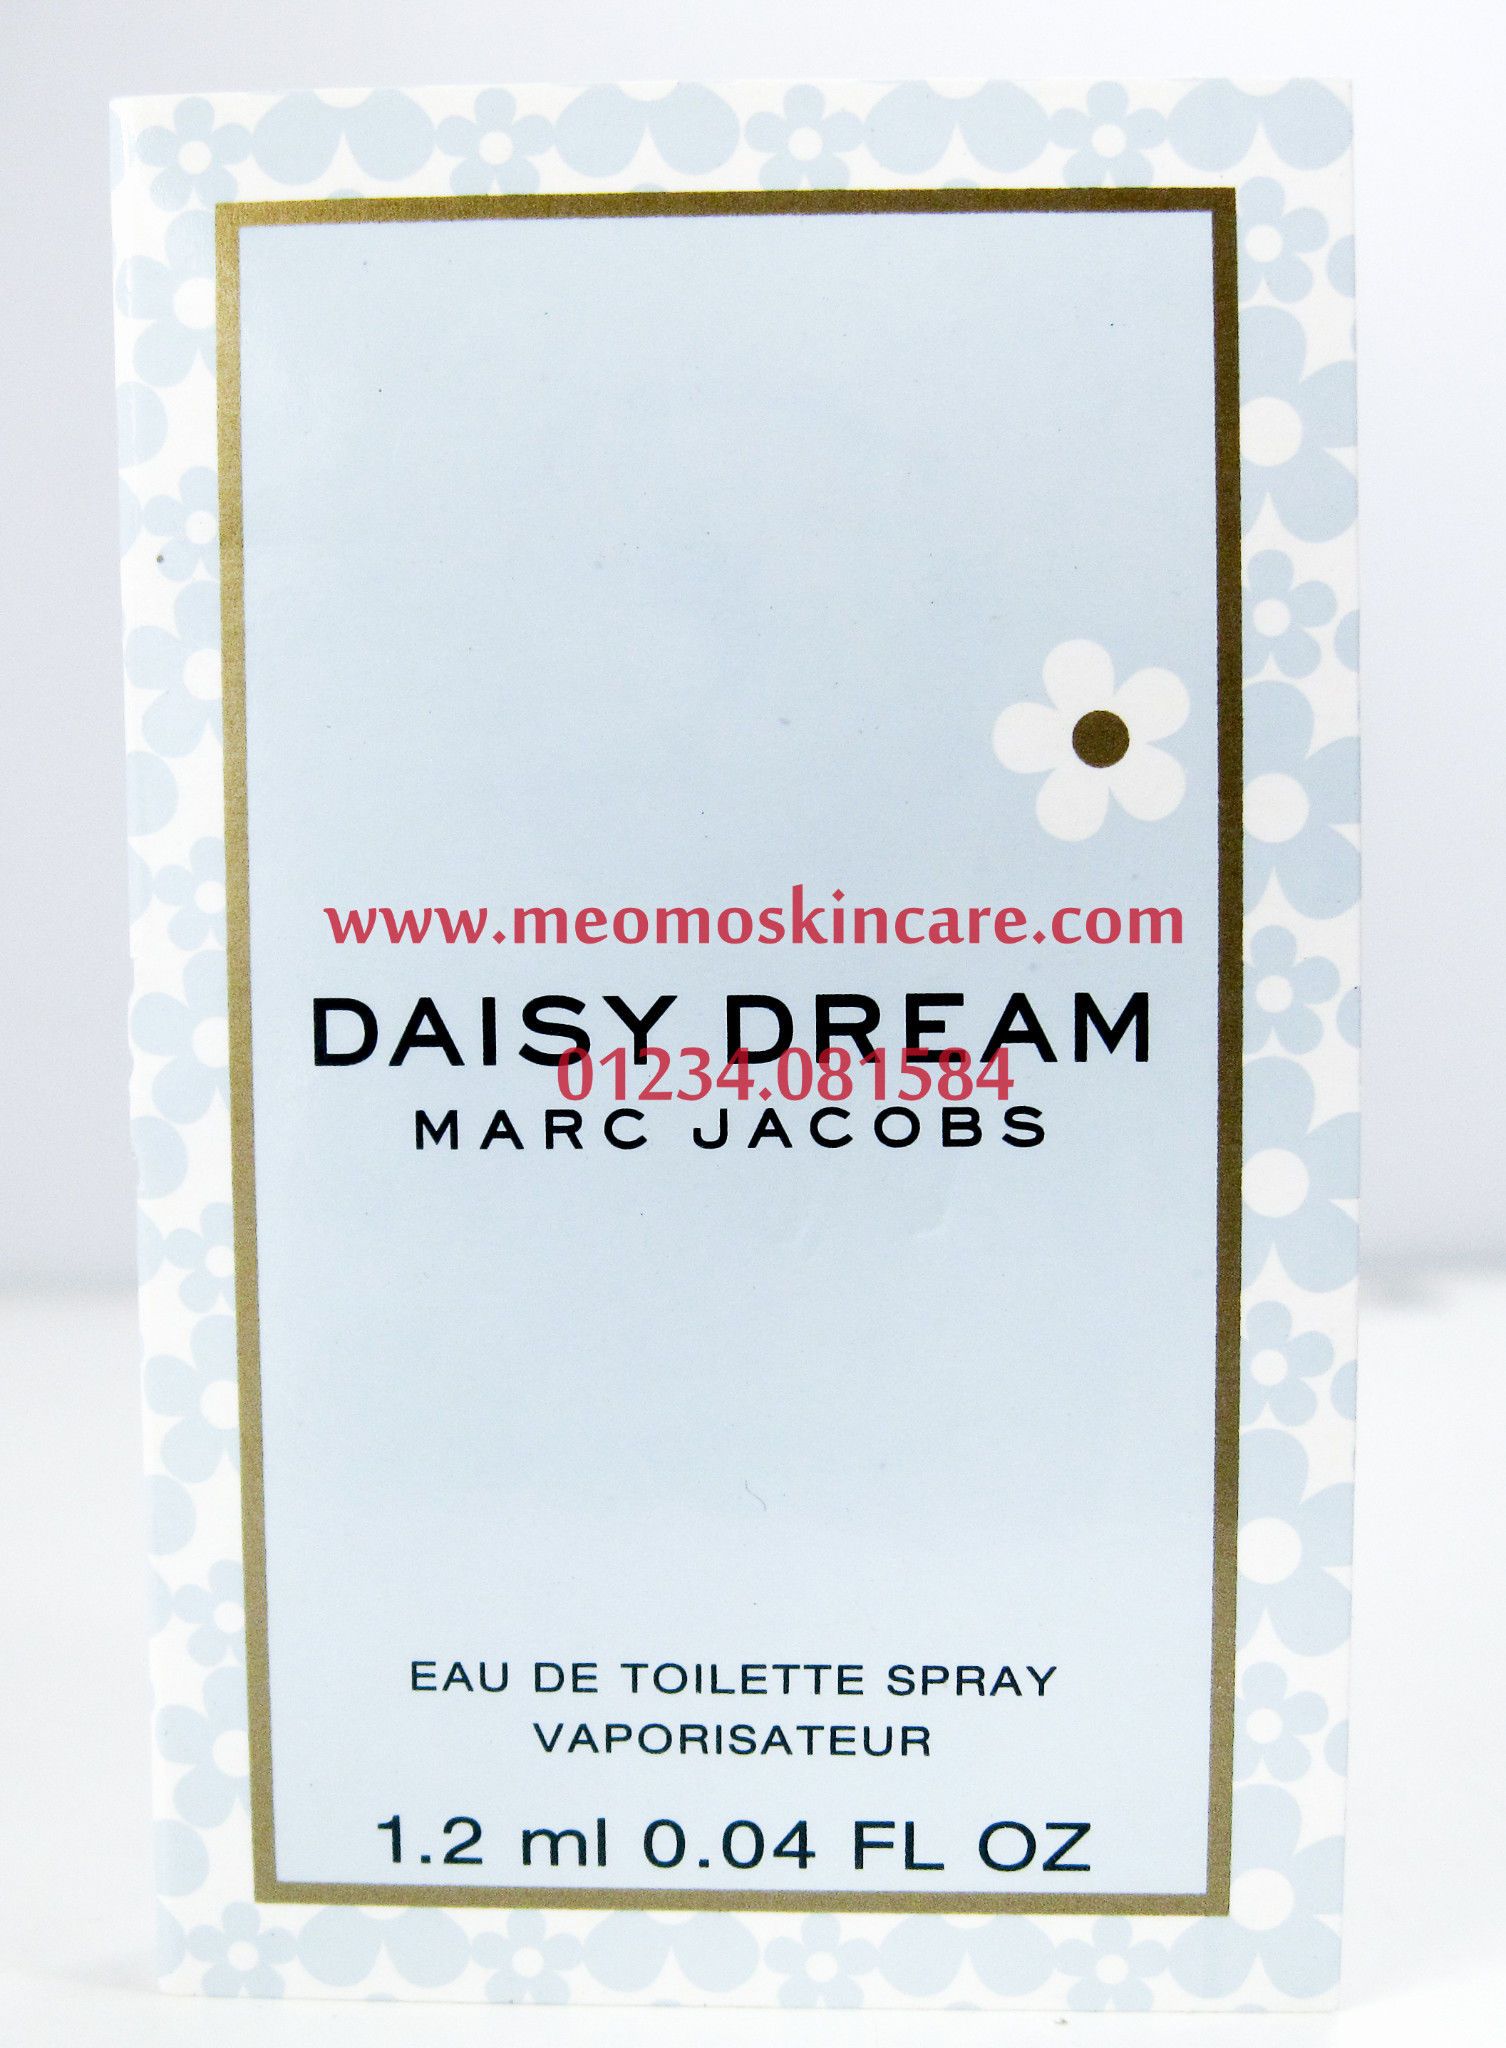 Marc Jacobs - Daisy Dream - 1.2ml